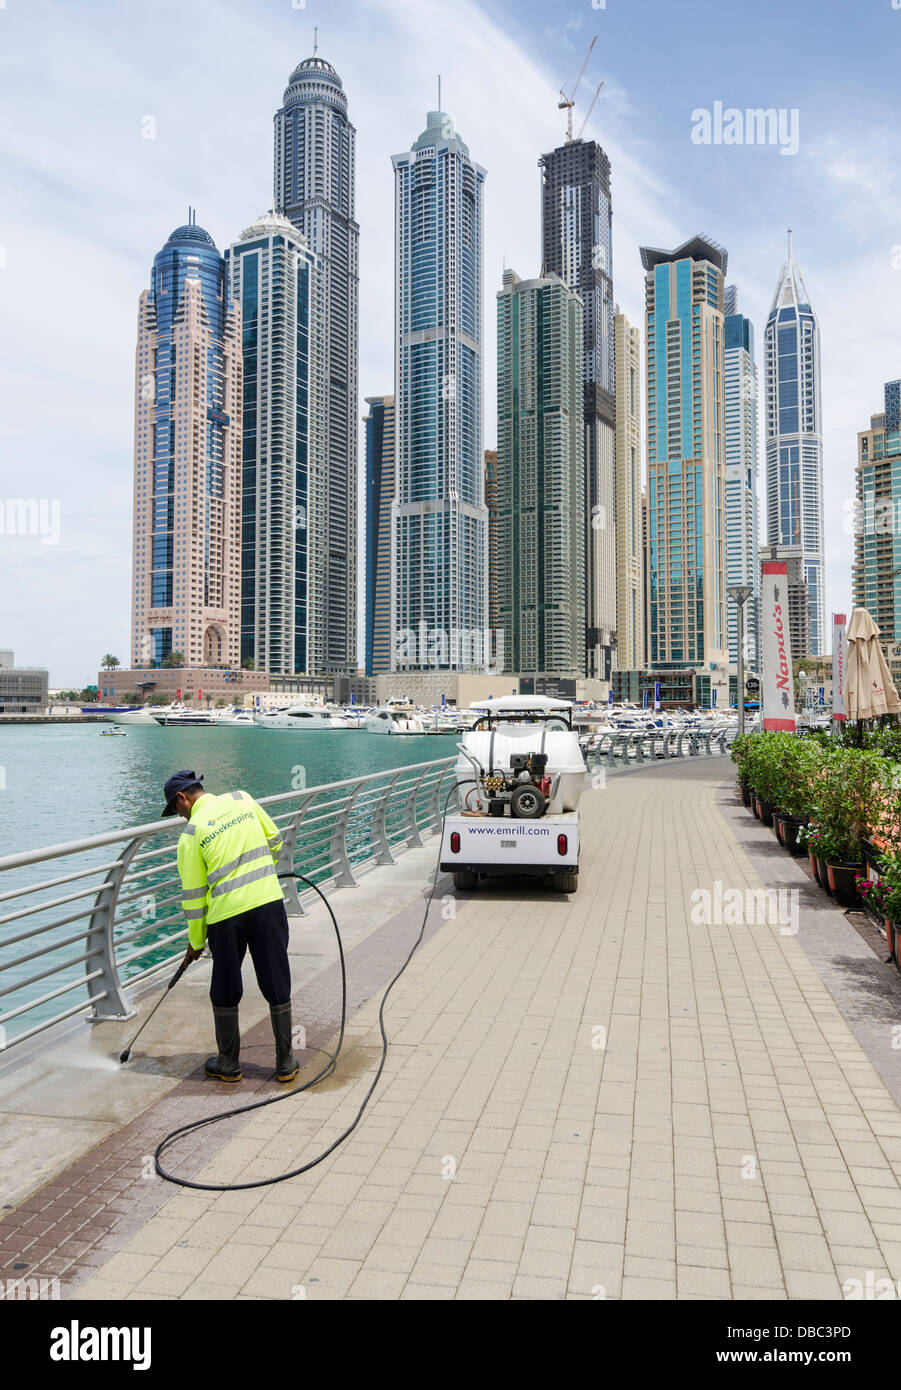 El hombre la limpieza del paseo marítimo, el puerto deportivo de Dubai, Dubai, Emiratos Árabes Unidos. Foto de stock